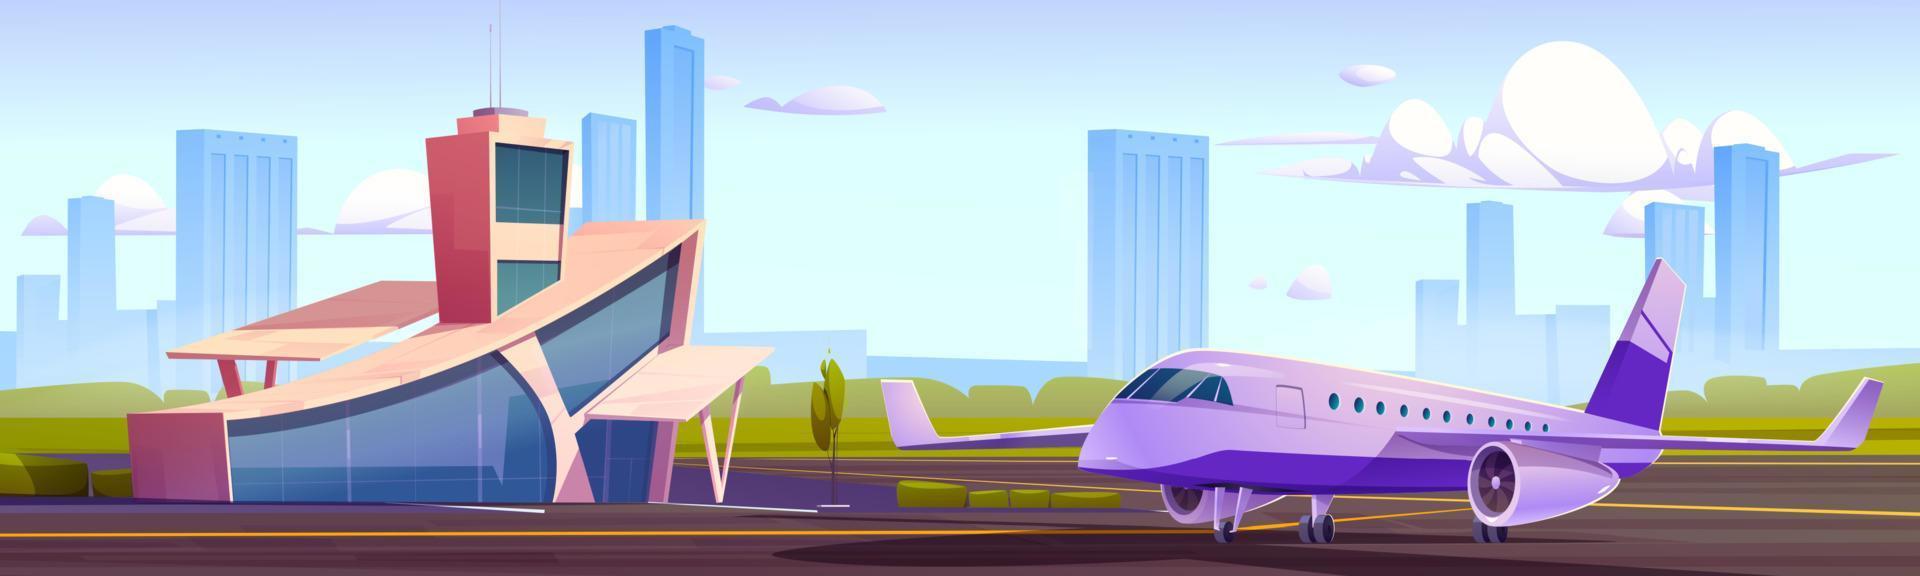 Flughafenterminalgebäude mit Turm und Flugzeug vektor